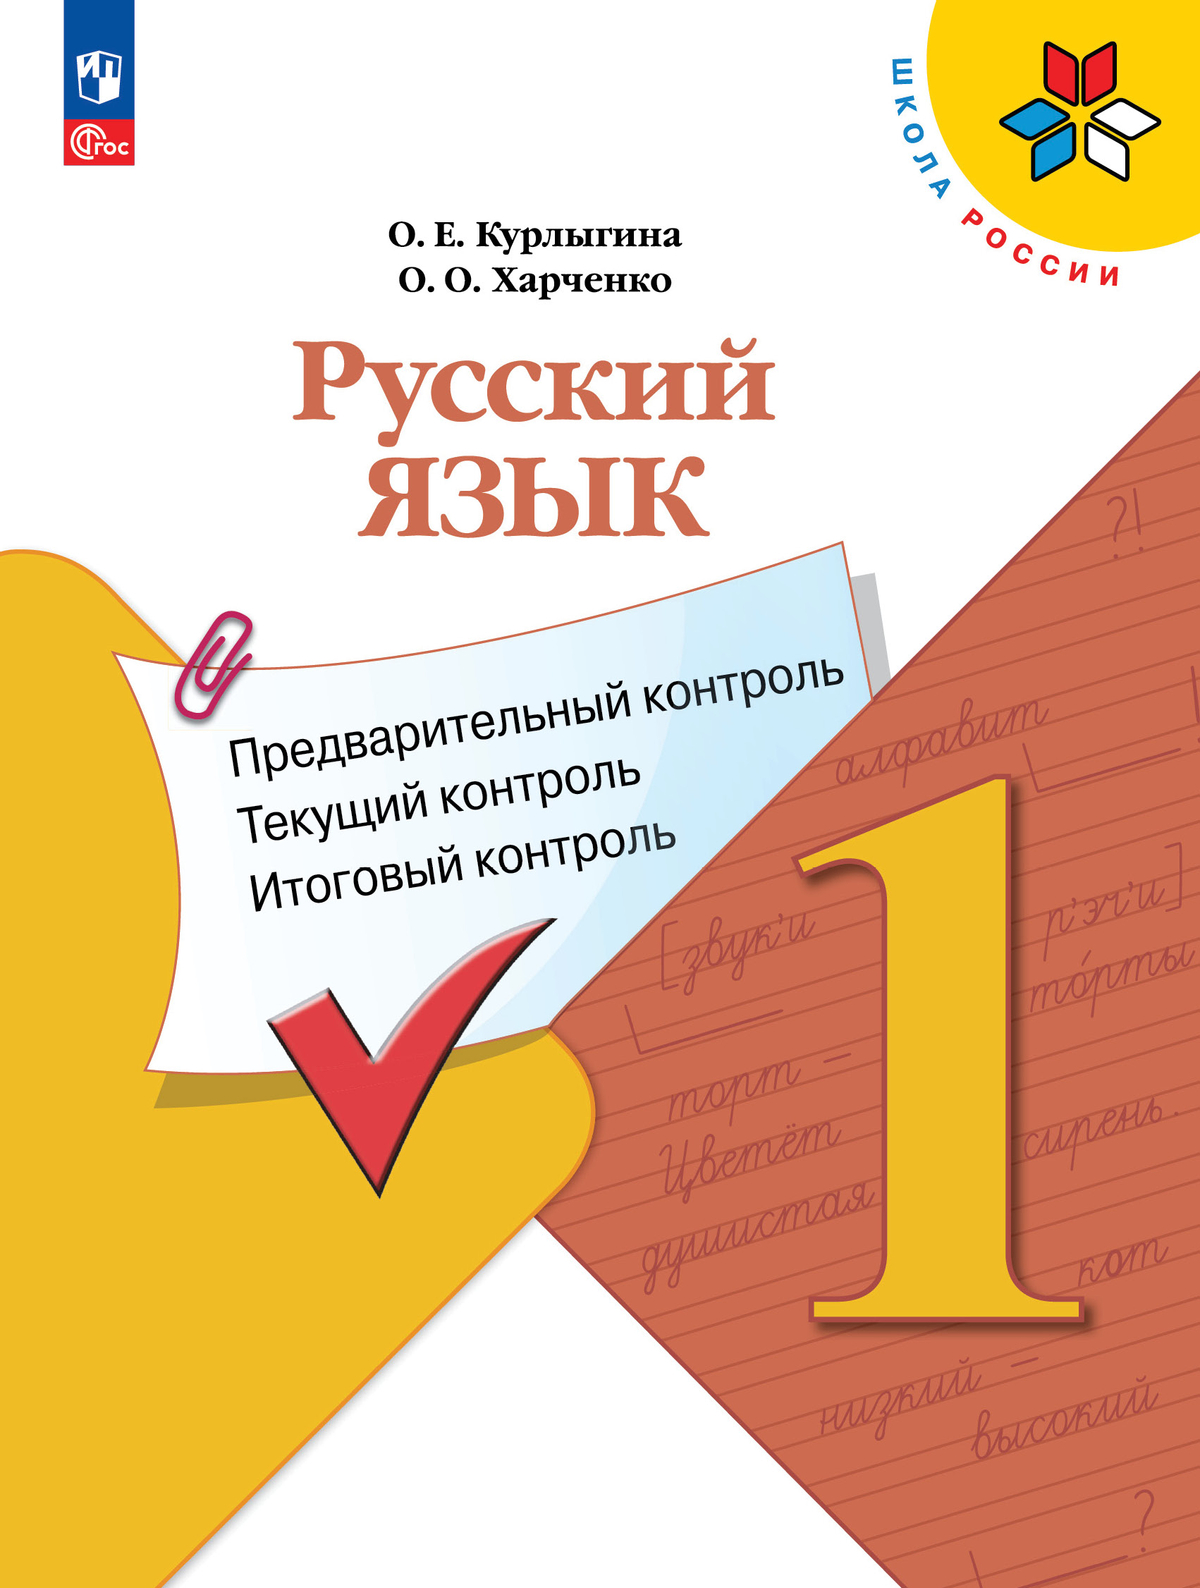 Русский язык: предварительный контроль, текущий контроль, итоговый контроль. 1 класс 1